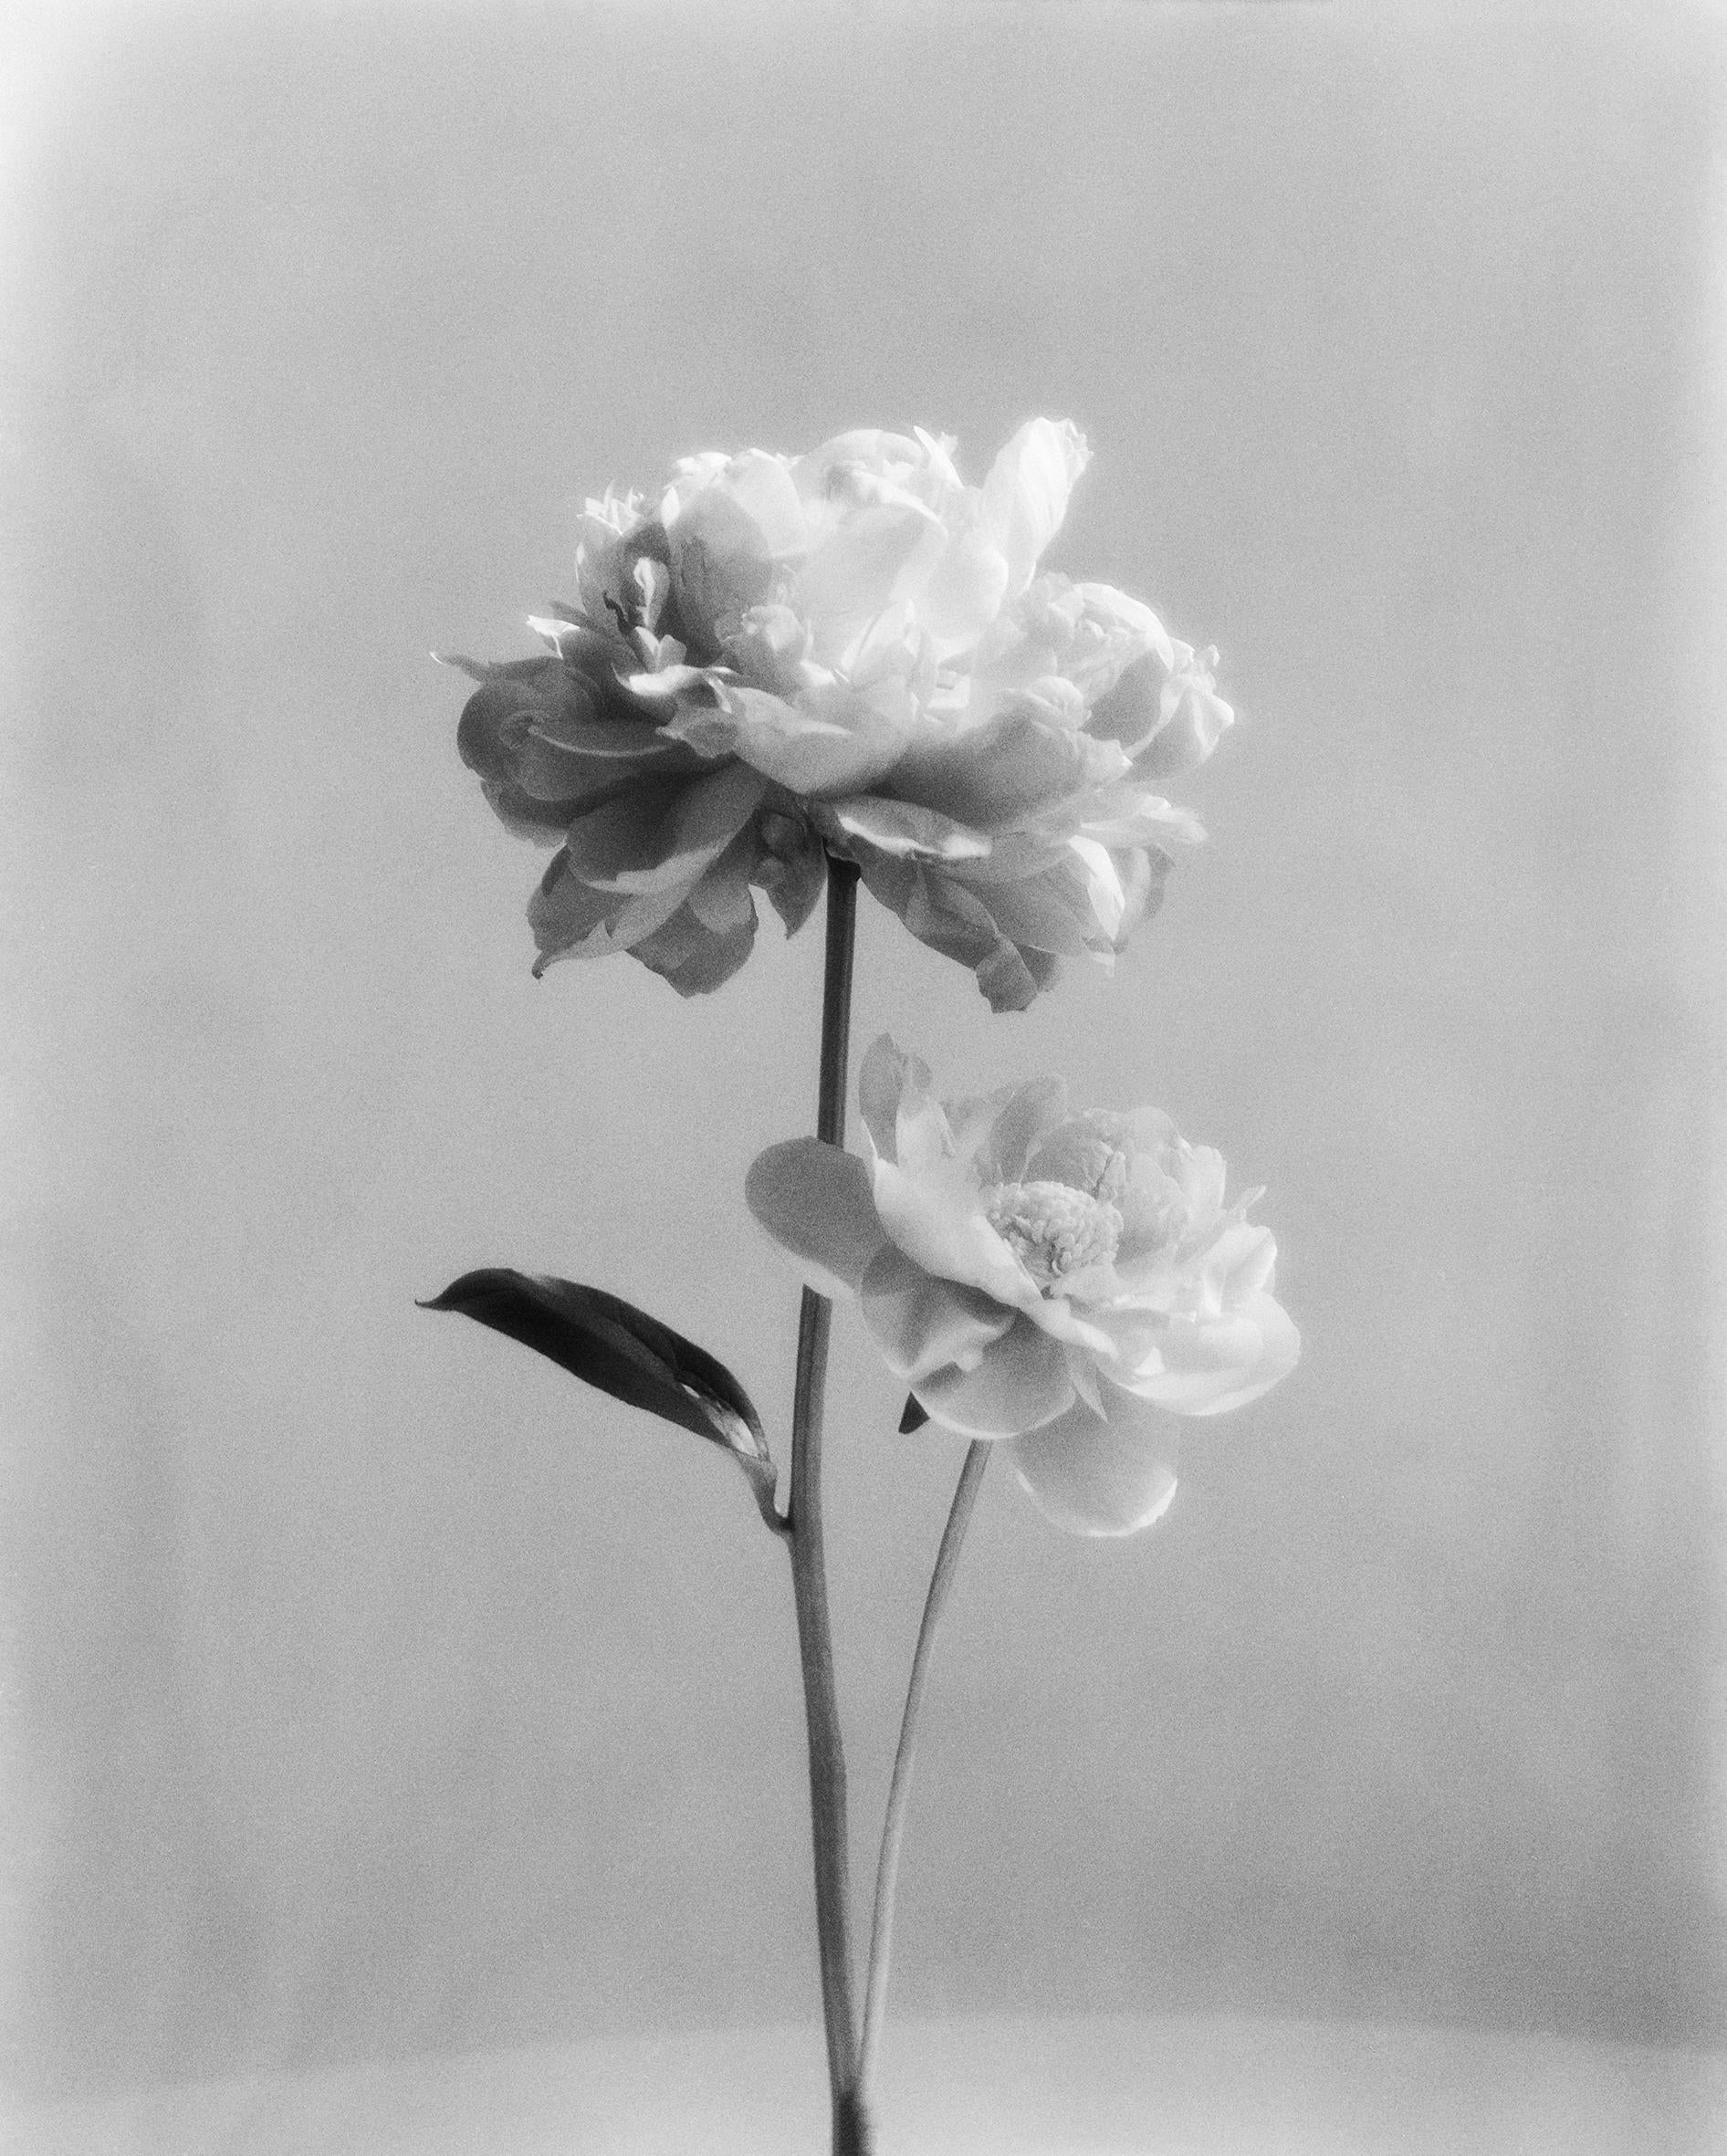 Pivoine n°2 - photographie florale analogique en noir et blanc, édition limitée à 15 exemplaires